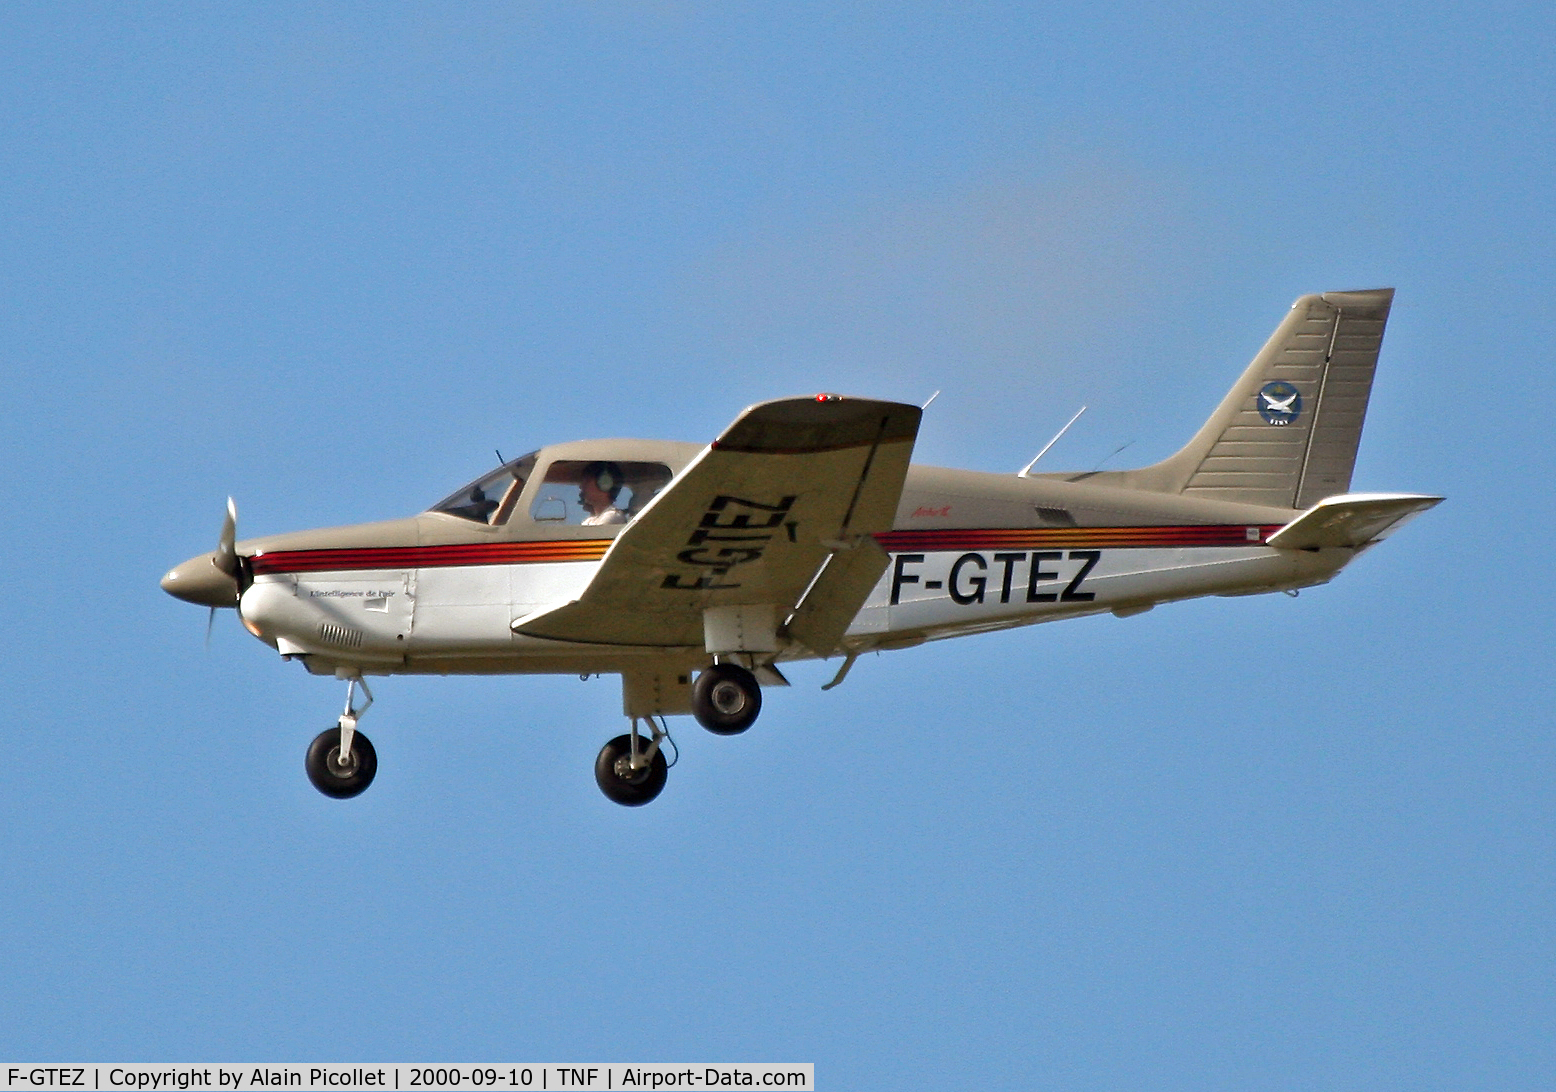 F-GTEZ, Piper PA-28-181 Archer C/N 28-90165, landing